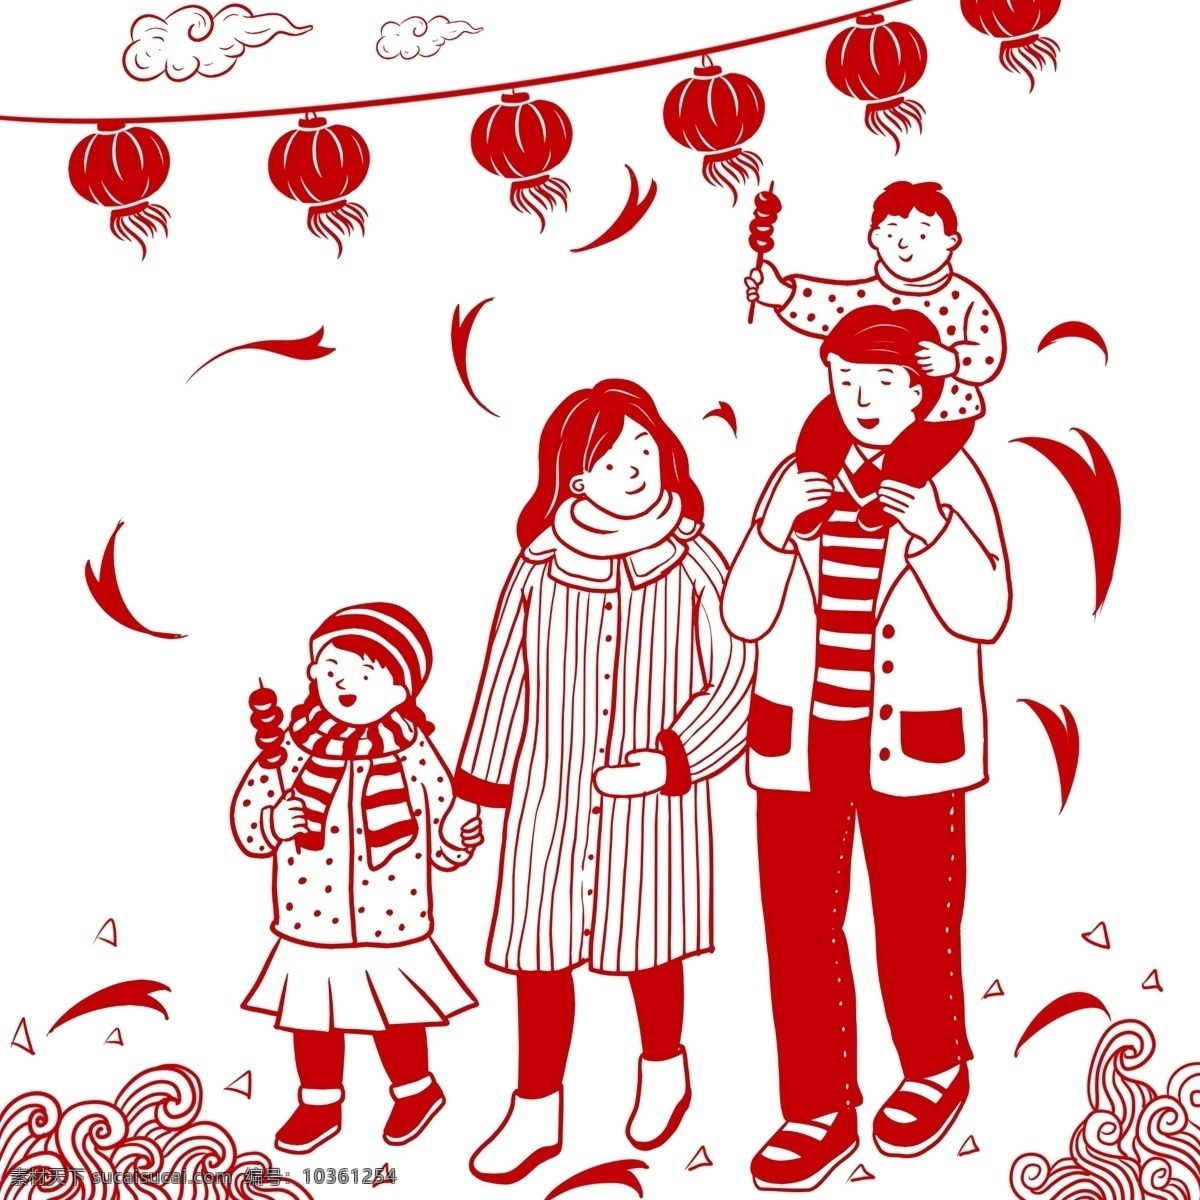 手绘 新年 一家人 剪纸 风 中国风 卡通 一家人爸爸 妈妈 孩子 吉祥 幸福 红色 喜庆 快乐 高兴 节日